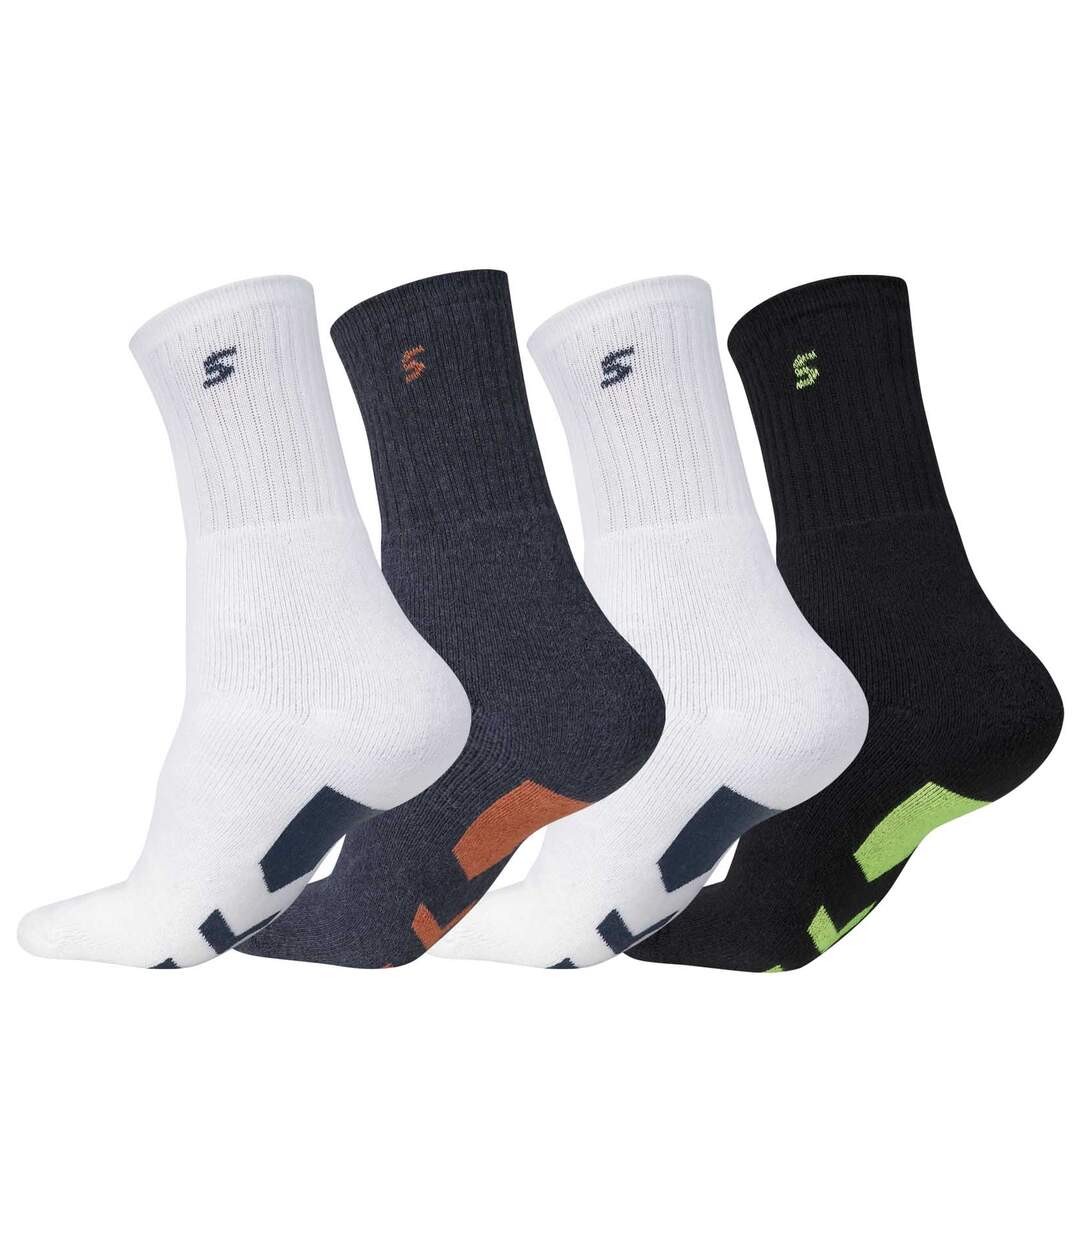 Pack of 4 Pairs of Men's Sports Socks - White Black Indigo Atlas For Men